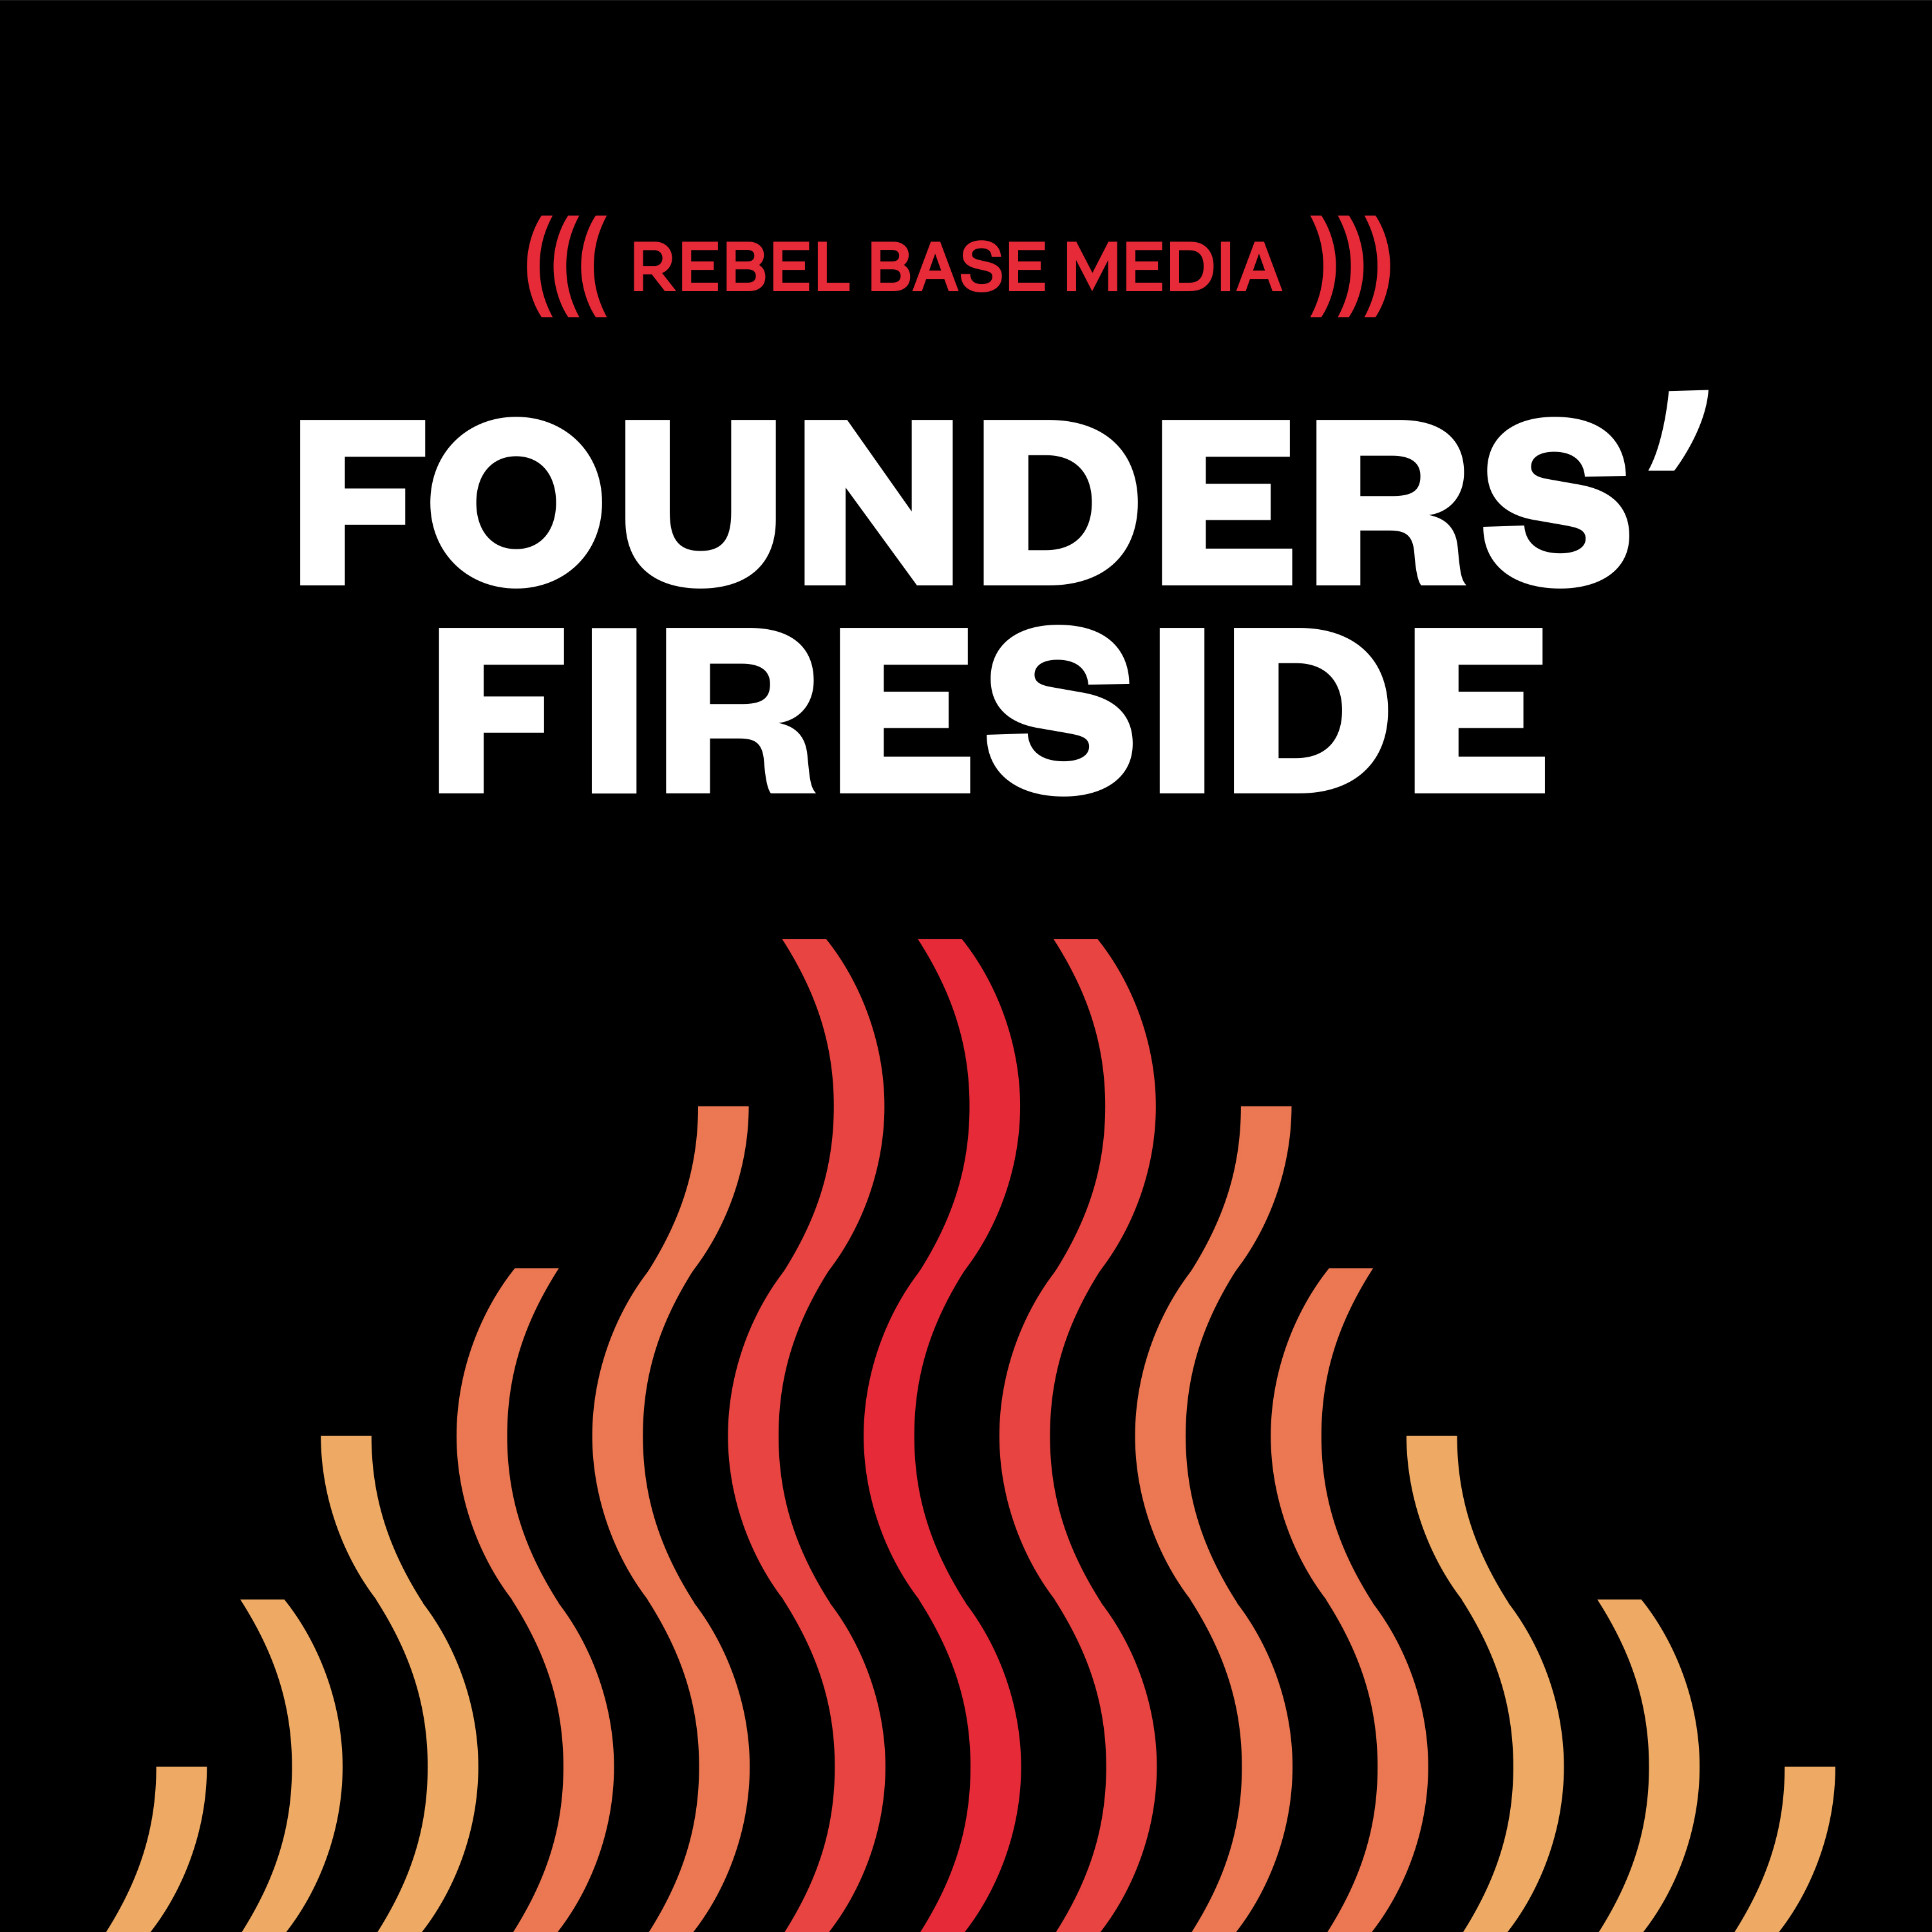 Founders' Fireside by Kieran McKeefery & Mark Asquith from Rebel Base Media